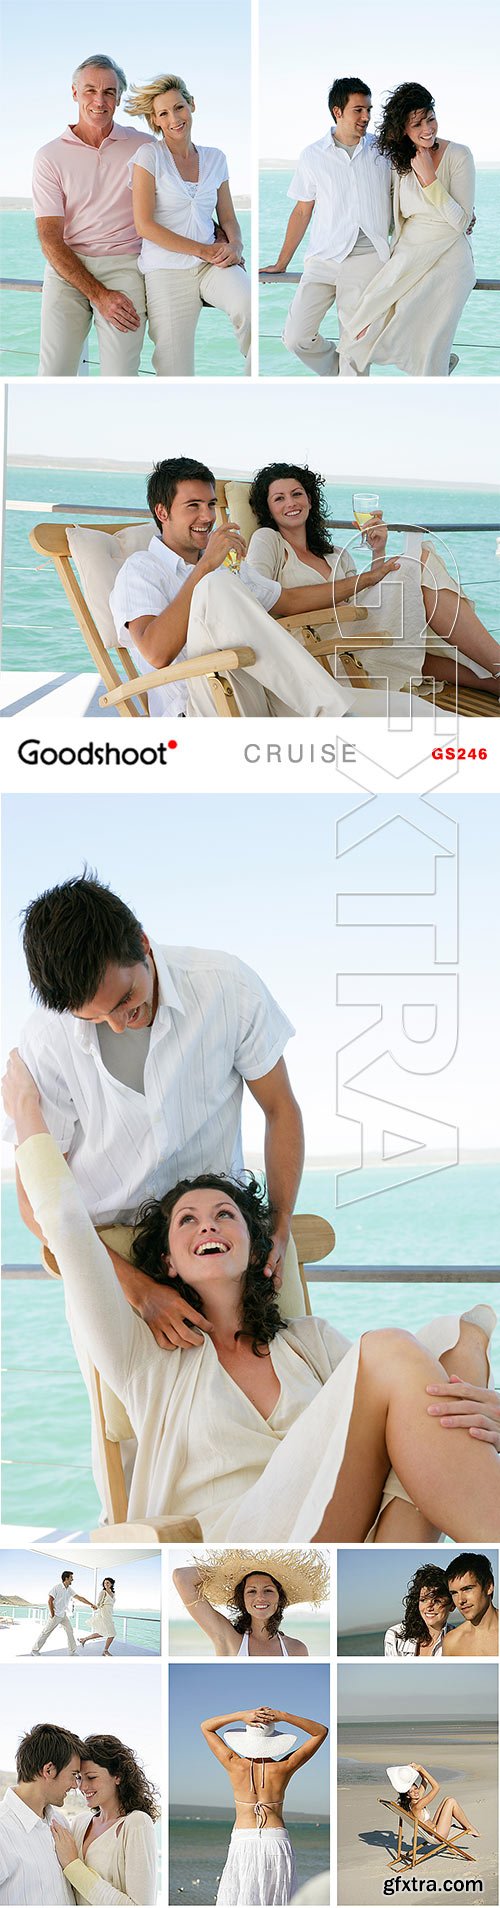 GoodShoot GS246 Cruise